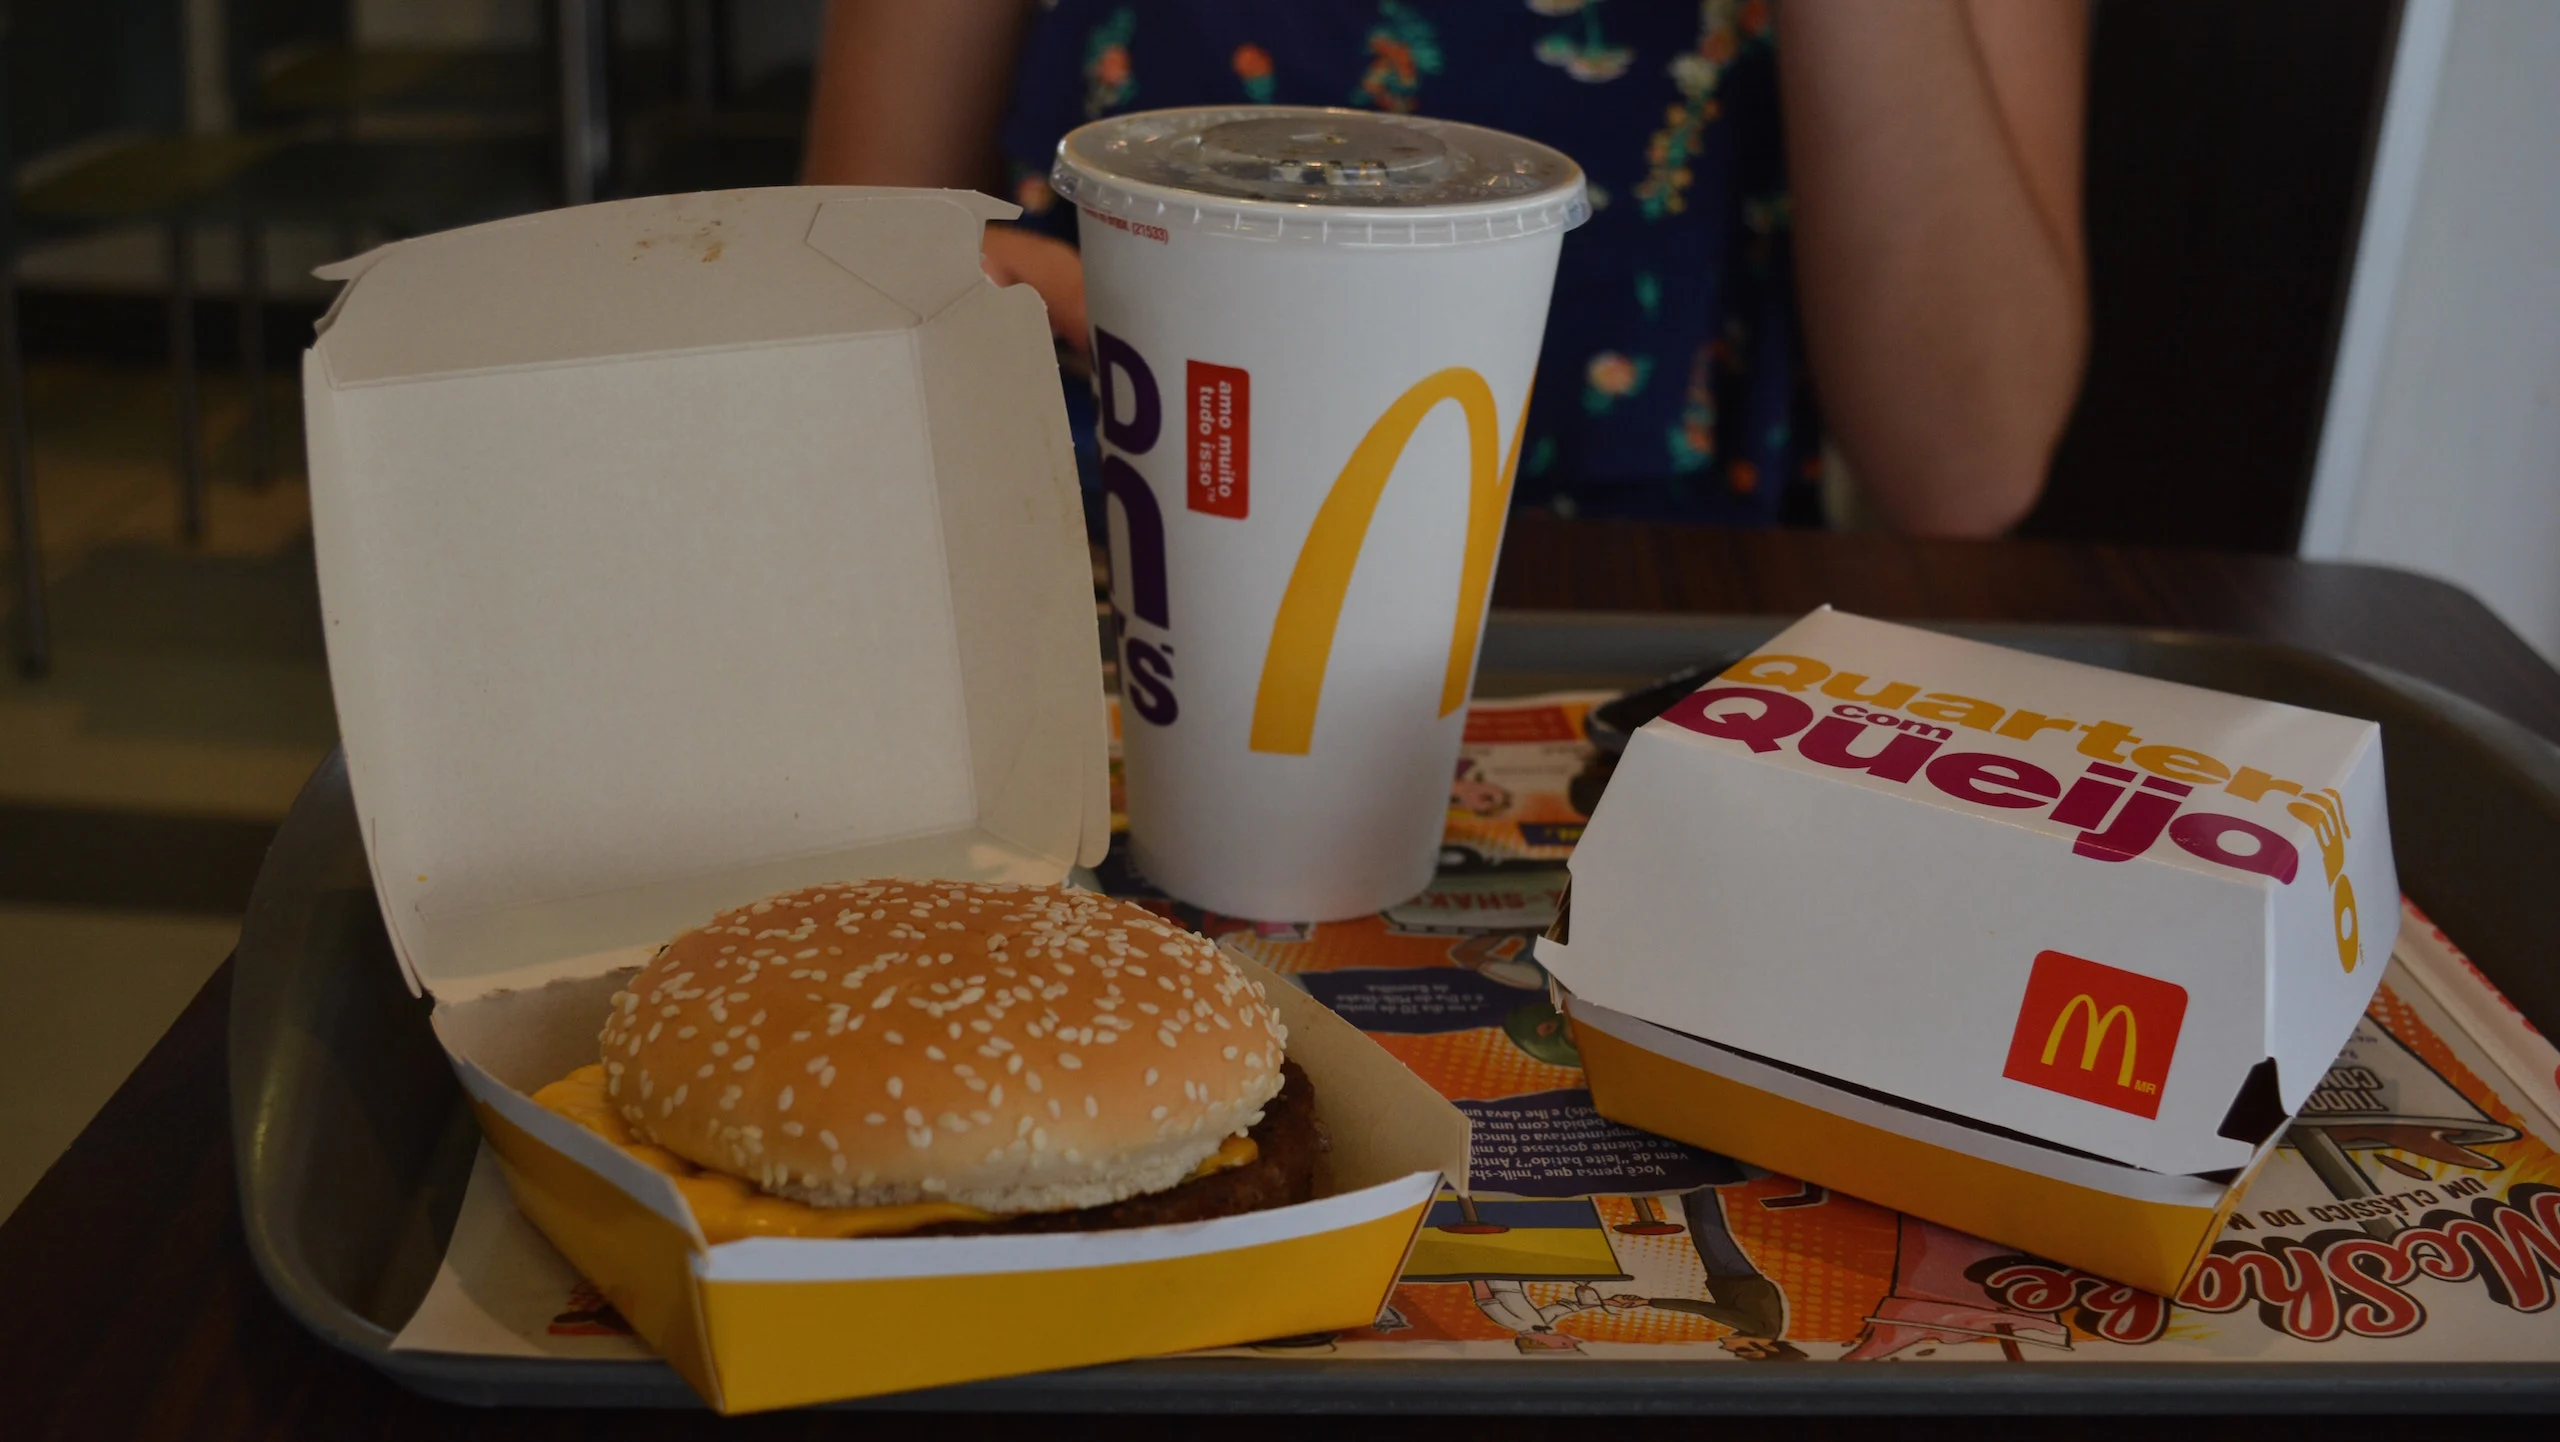 Solo un McDonald’s en el mundo tiene el menú global